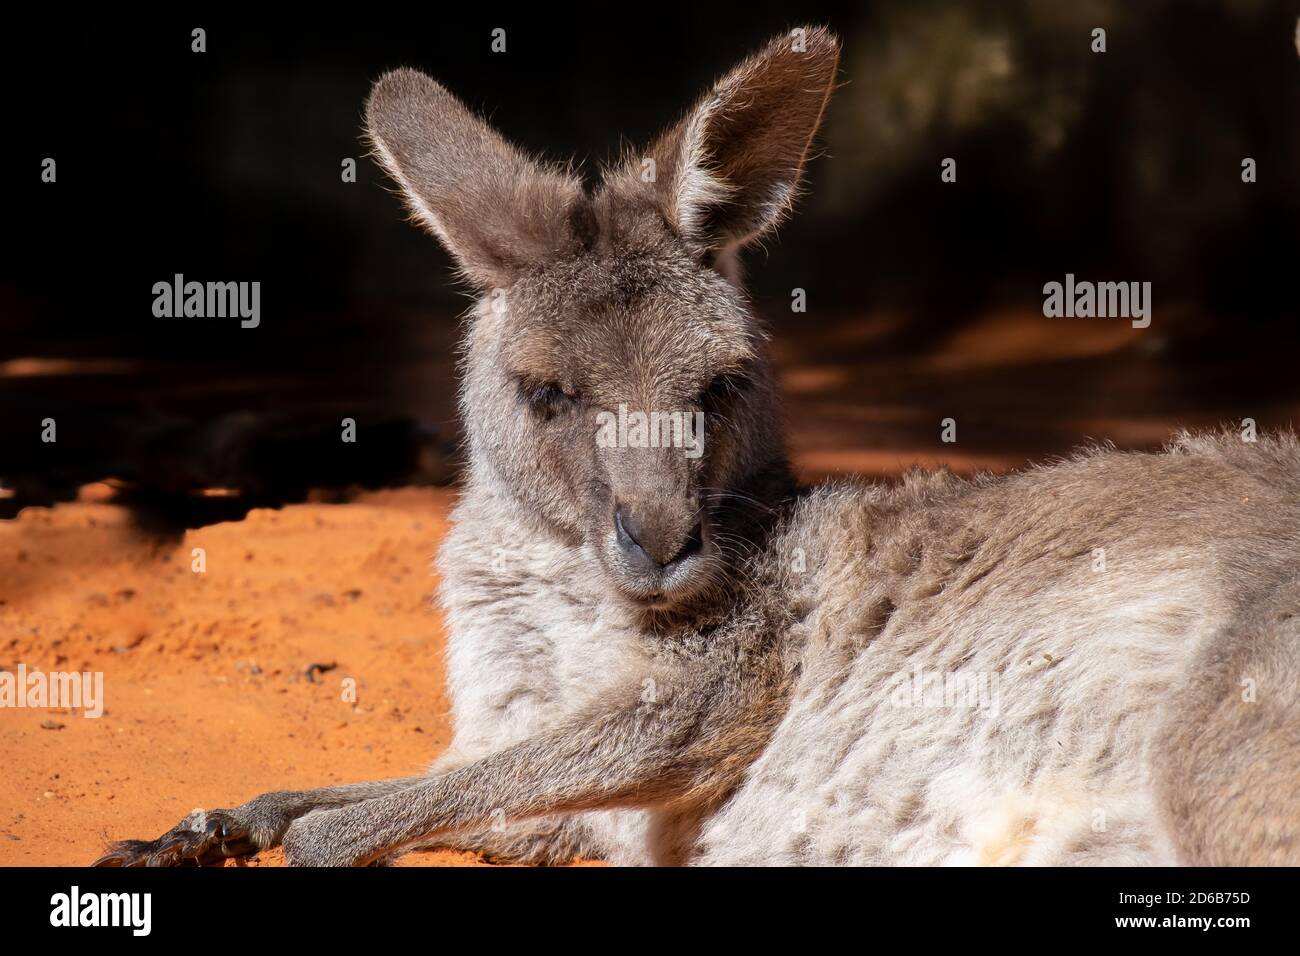 Ein australisches Känguru liegt auf rotem Sand. Das wilde Tier hat ...